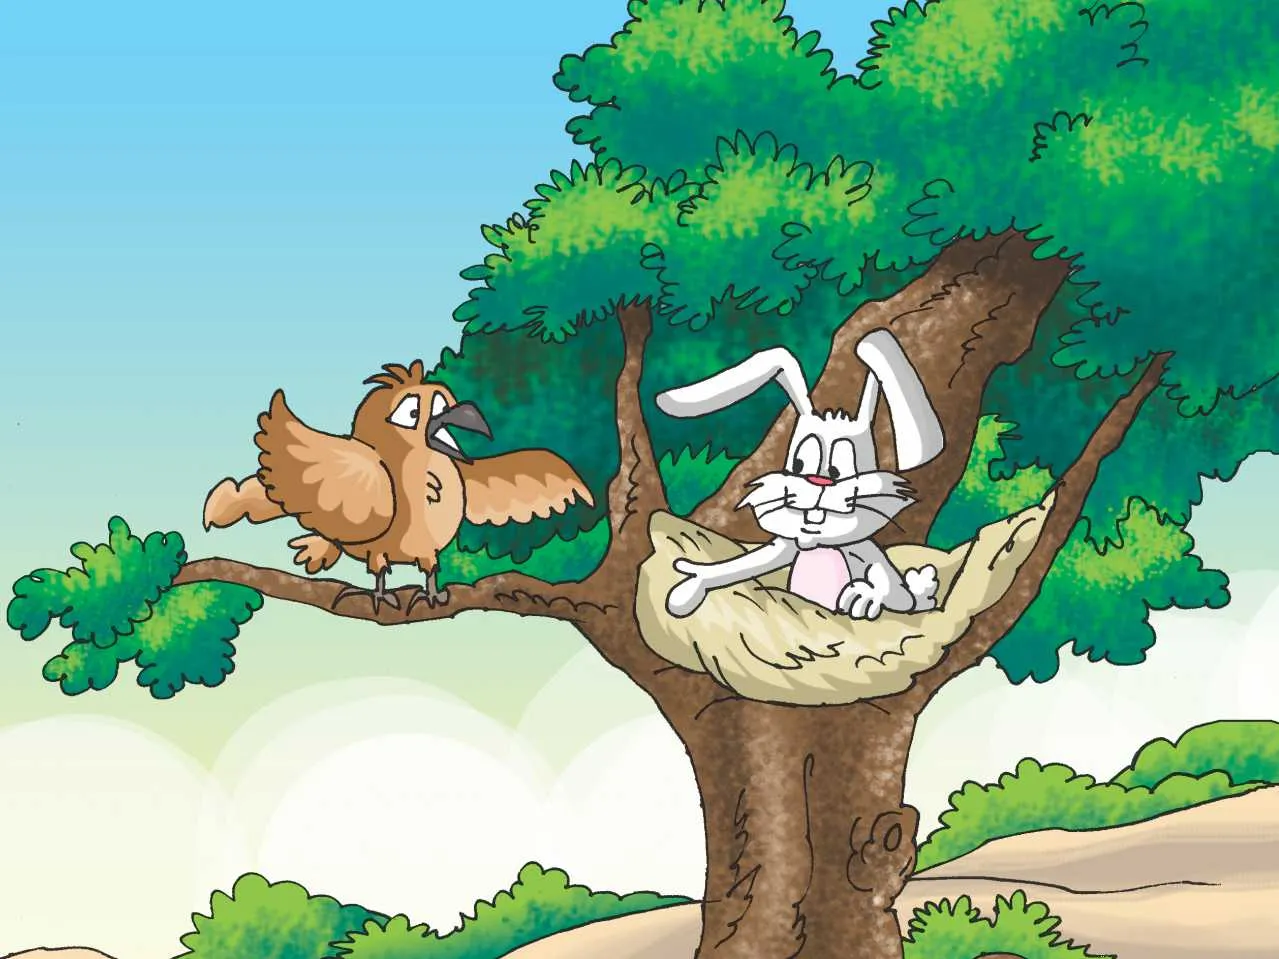 Rabbit and bird cartoon image